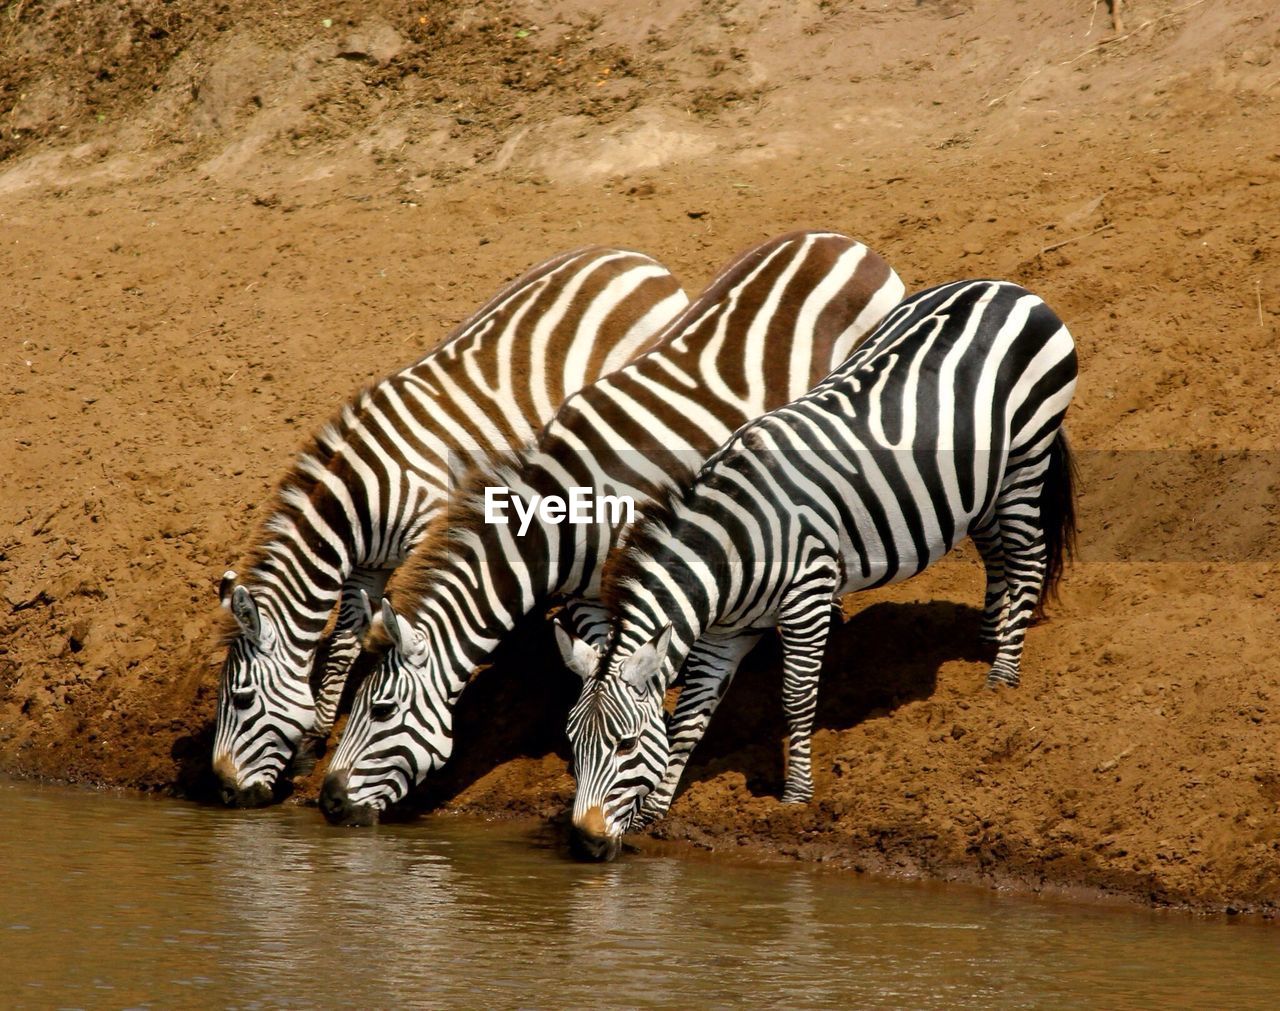 Three zebras drinking water